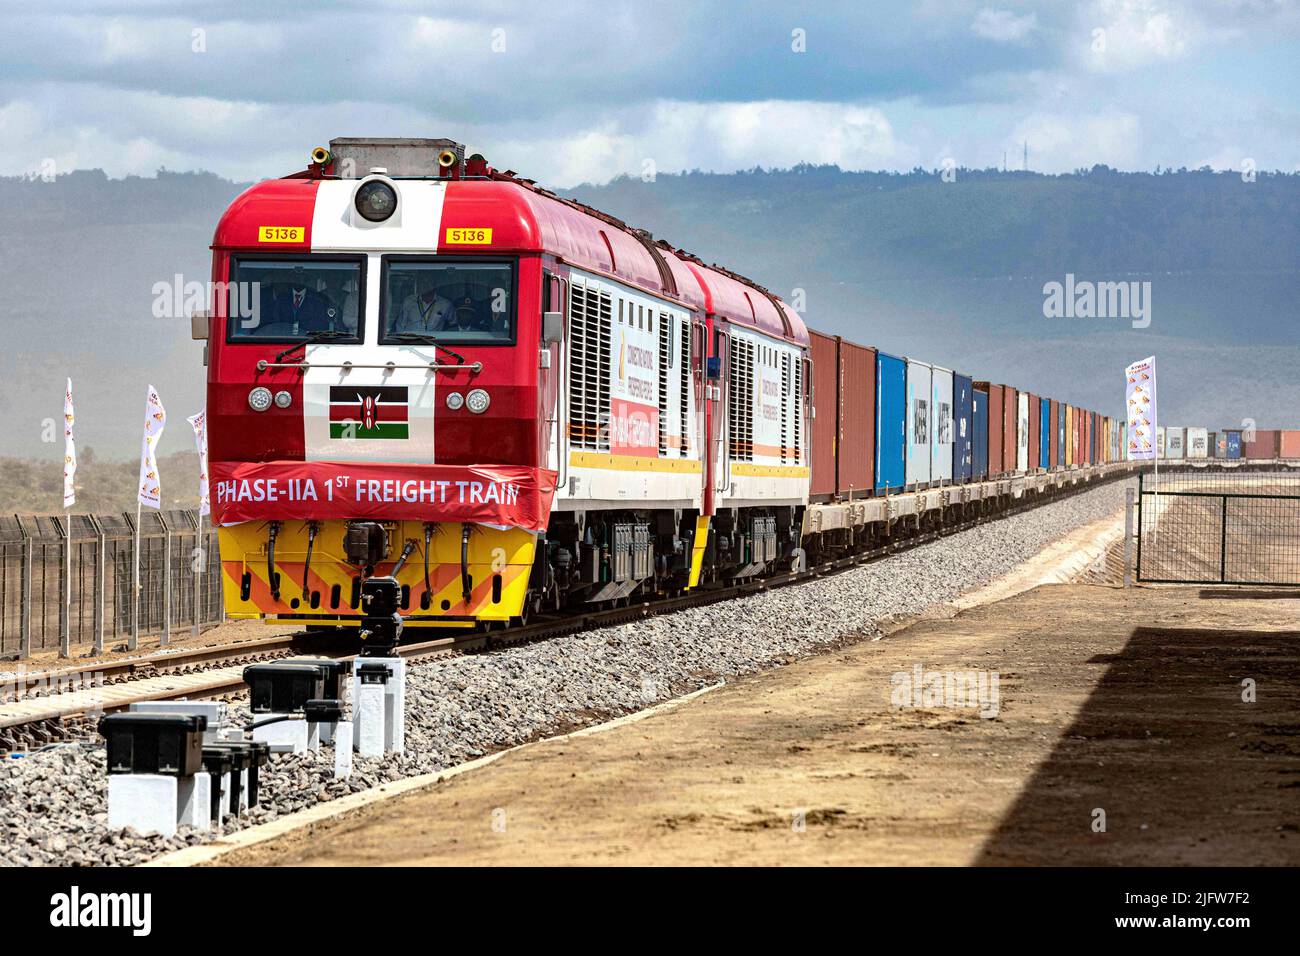 (220705) -- NAIROBI, 5. Juli 2022 (Xinhua) -- der erste Güterzug der Nairobi-Naivasha Standard Gauge Railway (SGR) kommt am 17. Dezember 2019 am Naivasha Inland Container Depot in Kenia an. Die 120km gebaute Nairobi-Naivasha-Eisenbahn ist eine Erweiterung der in China gebauten modernen Eisenbahn, die Kenias Küstenhafenstadt Mombasa mit der Hauptstadt Nairobi verbindet. Die SGR Mombasa-Nairobi, die hauptsächlich von China finanziert und von der China Road and Bridge Corporation (CRBC) errichtet wurde, begann 2014 mit dem Bau und wurde 2017 fertiggestellt. Nach Angaben von Afristar ist die Mombasa-Nairobi Standard Gauge Railway ( Stockfoto